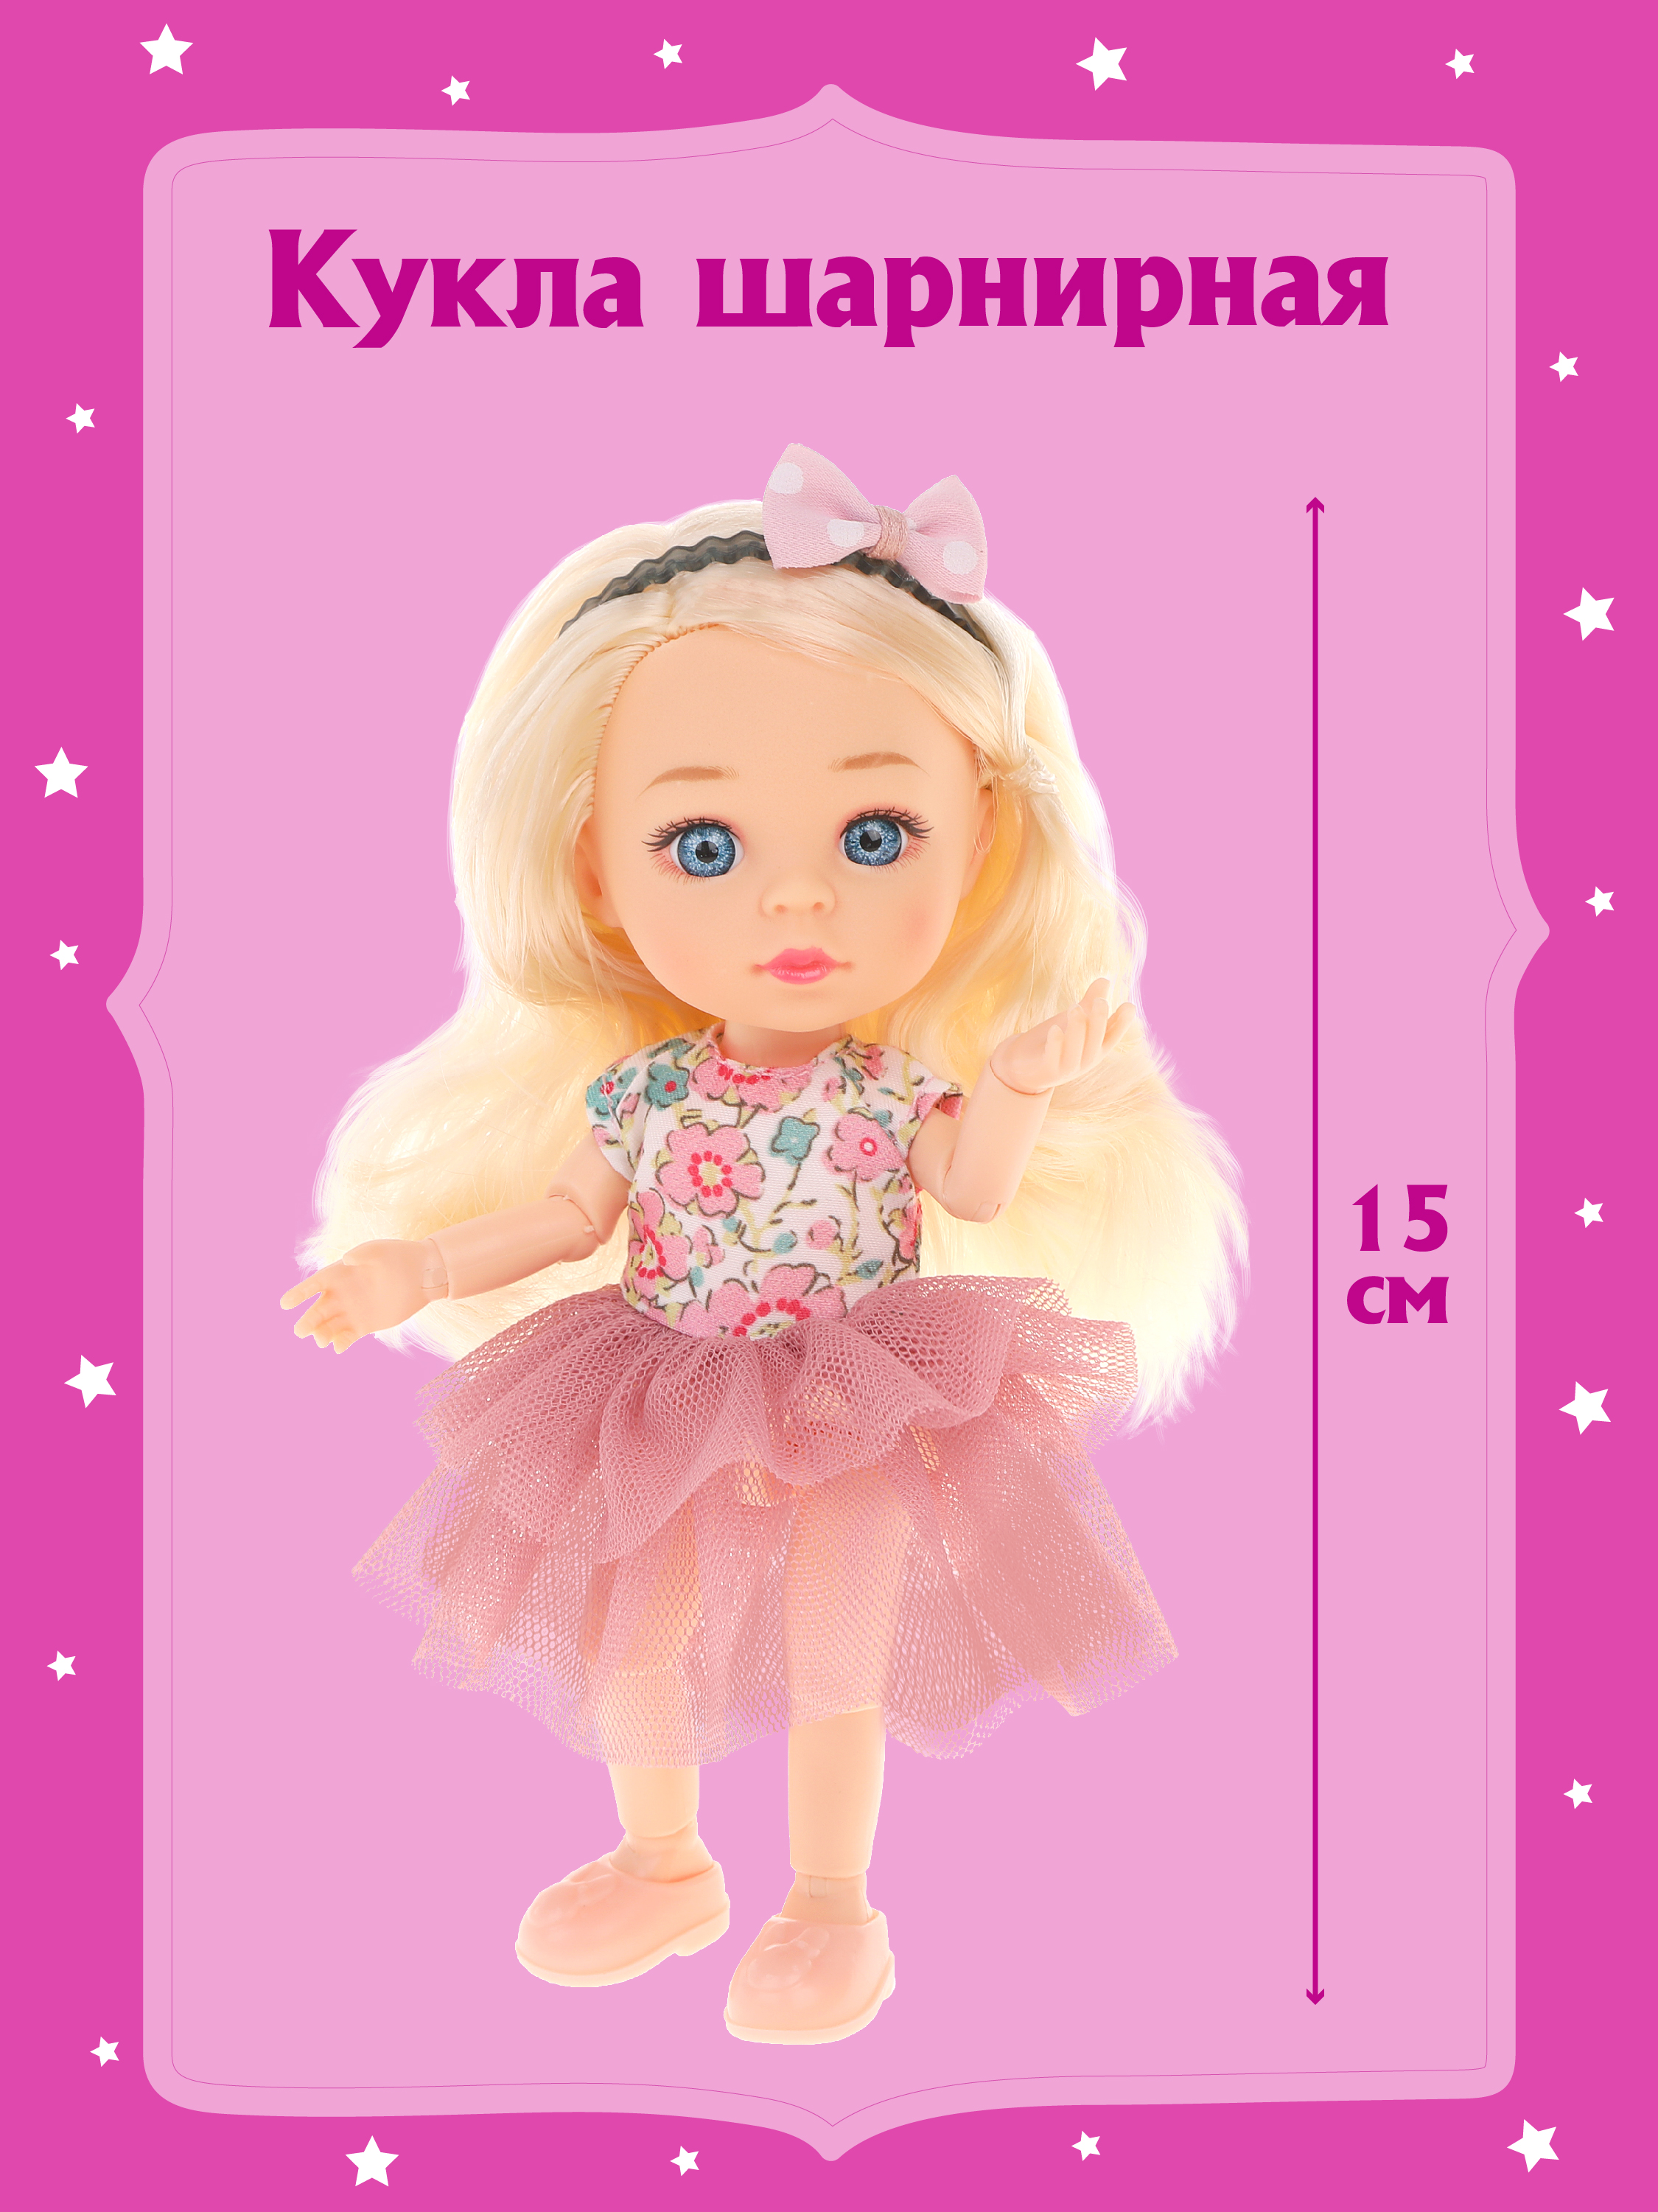 Кукла для девочек Наша Игрушка шарнирная 15 см 803604 - фото 1